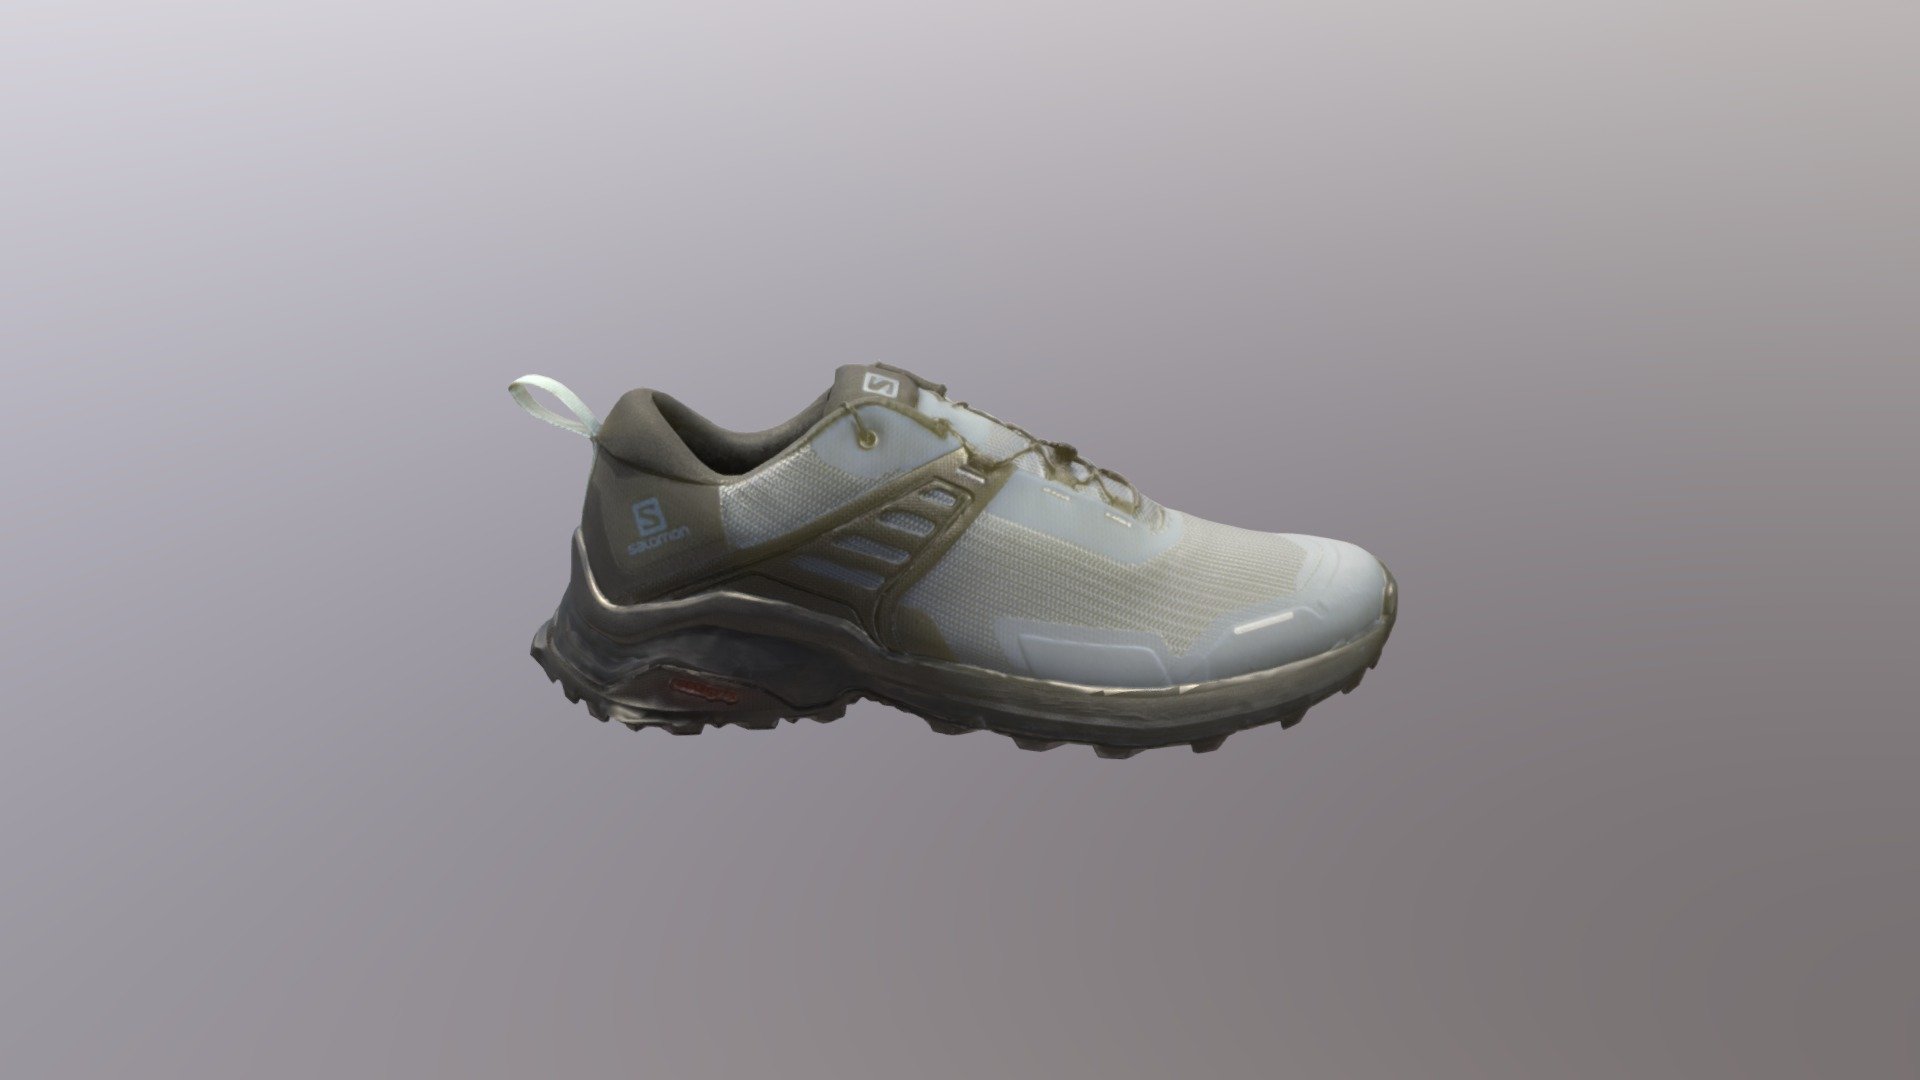 modello 3d scarpa da ginnastica a supporto di proiezionPROIEZIONI ORTOGONALI - scarpa da ginnastica - 3D model by perronearch 3d model